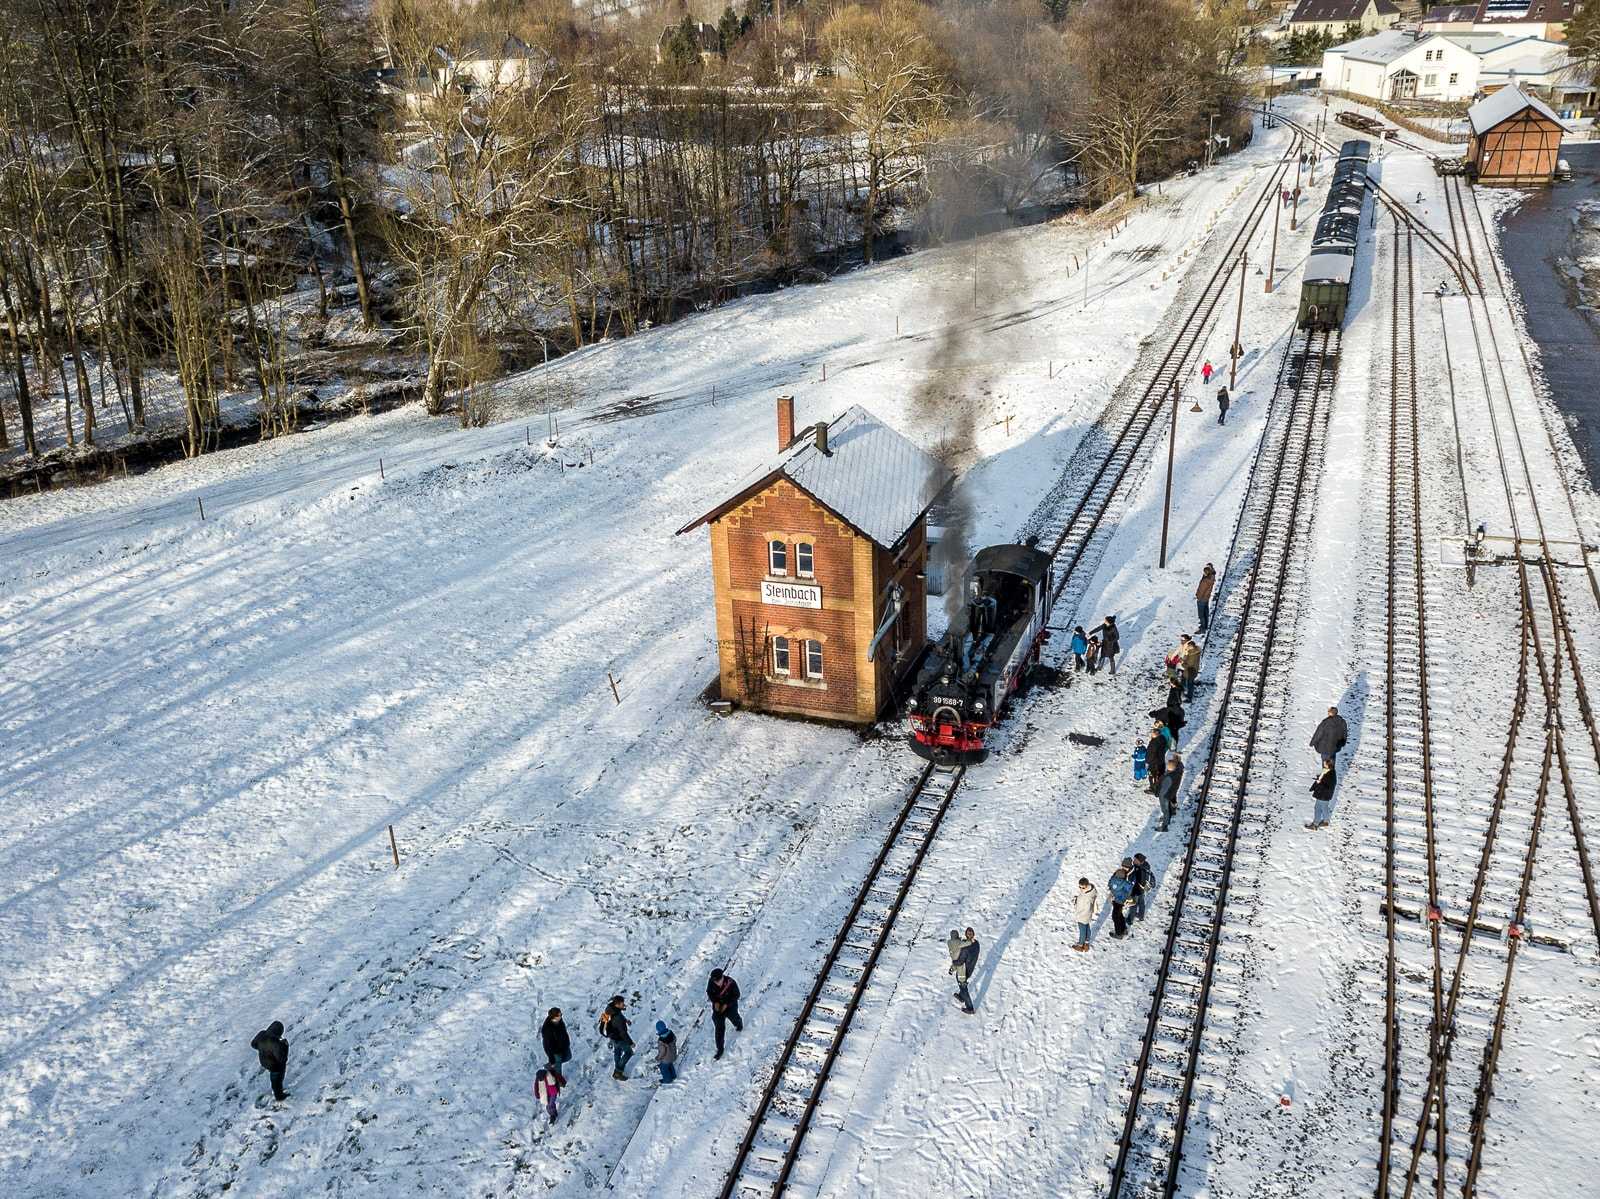 Eine Aufnahme vom winterlichen Bahnhof Steinbach im Modell? Nein – mit einer Drohne gelang es dem Fotografen Ondřej Zaoral aus Prag, den einzigen sonnigen Moment des 4. Februar 2018 einzufangen.